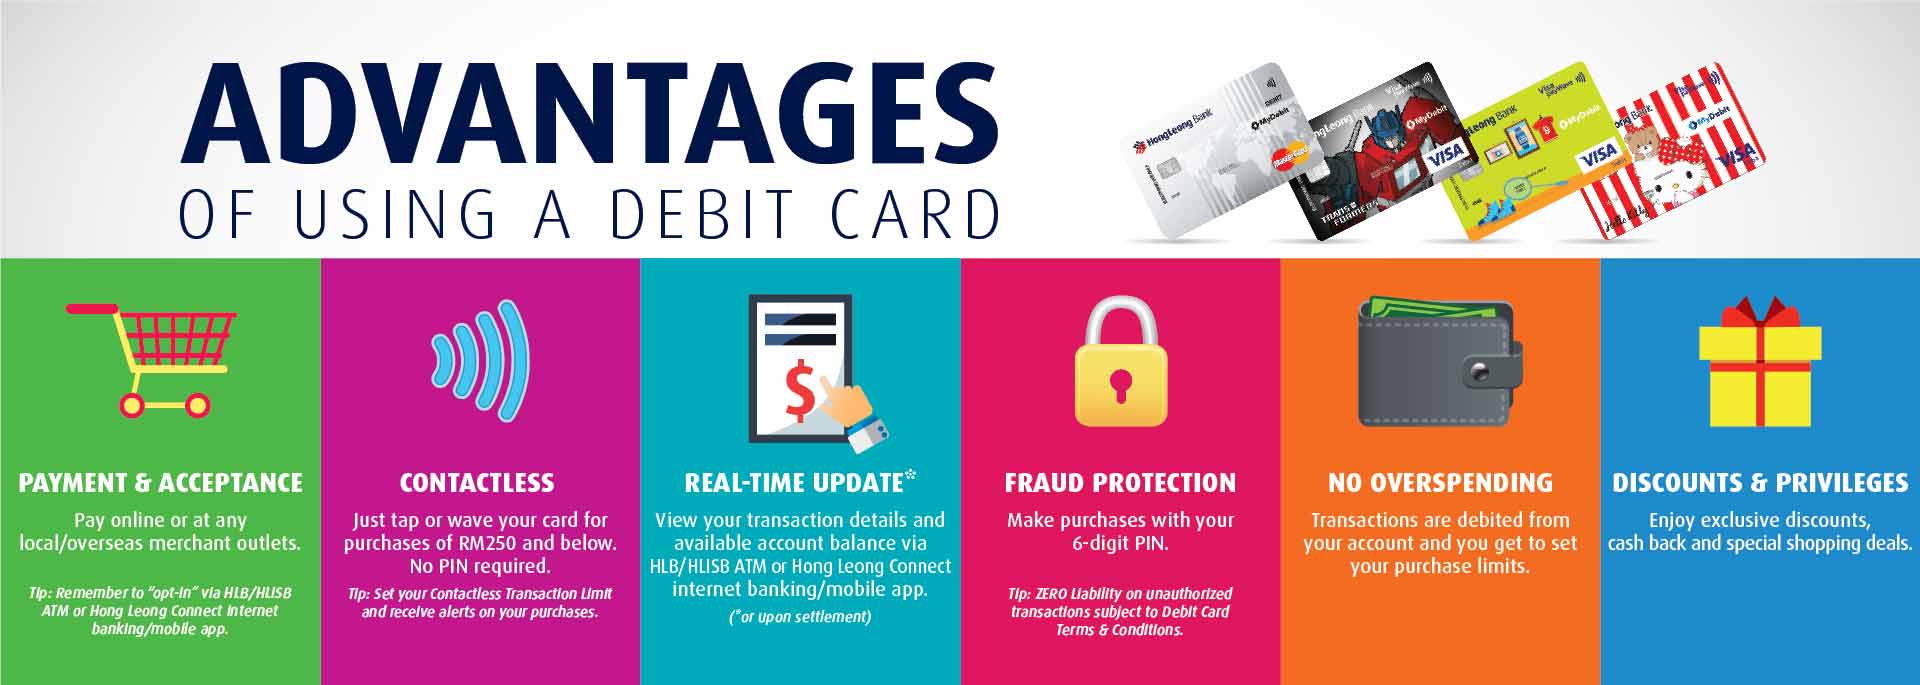 debit card advantages banner